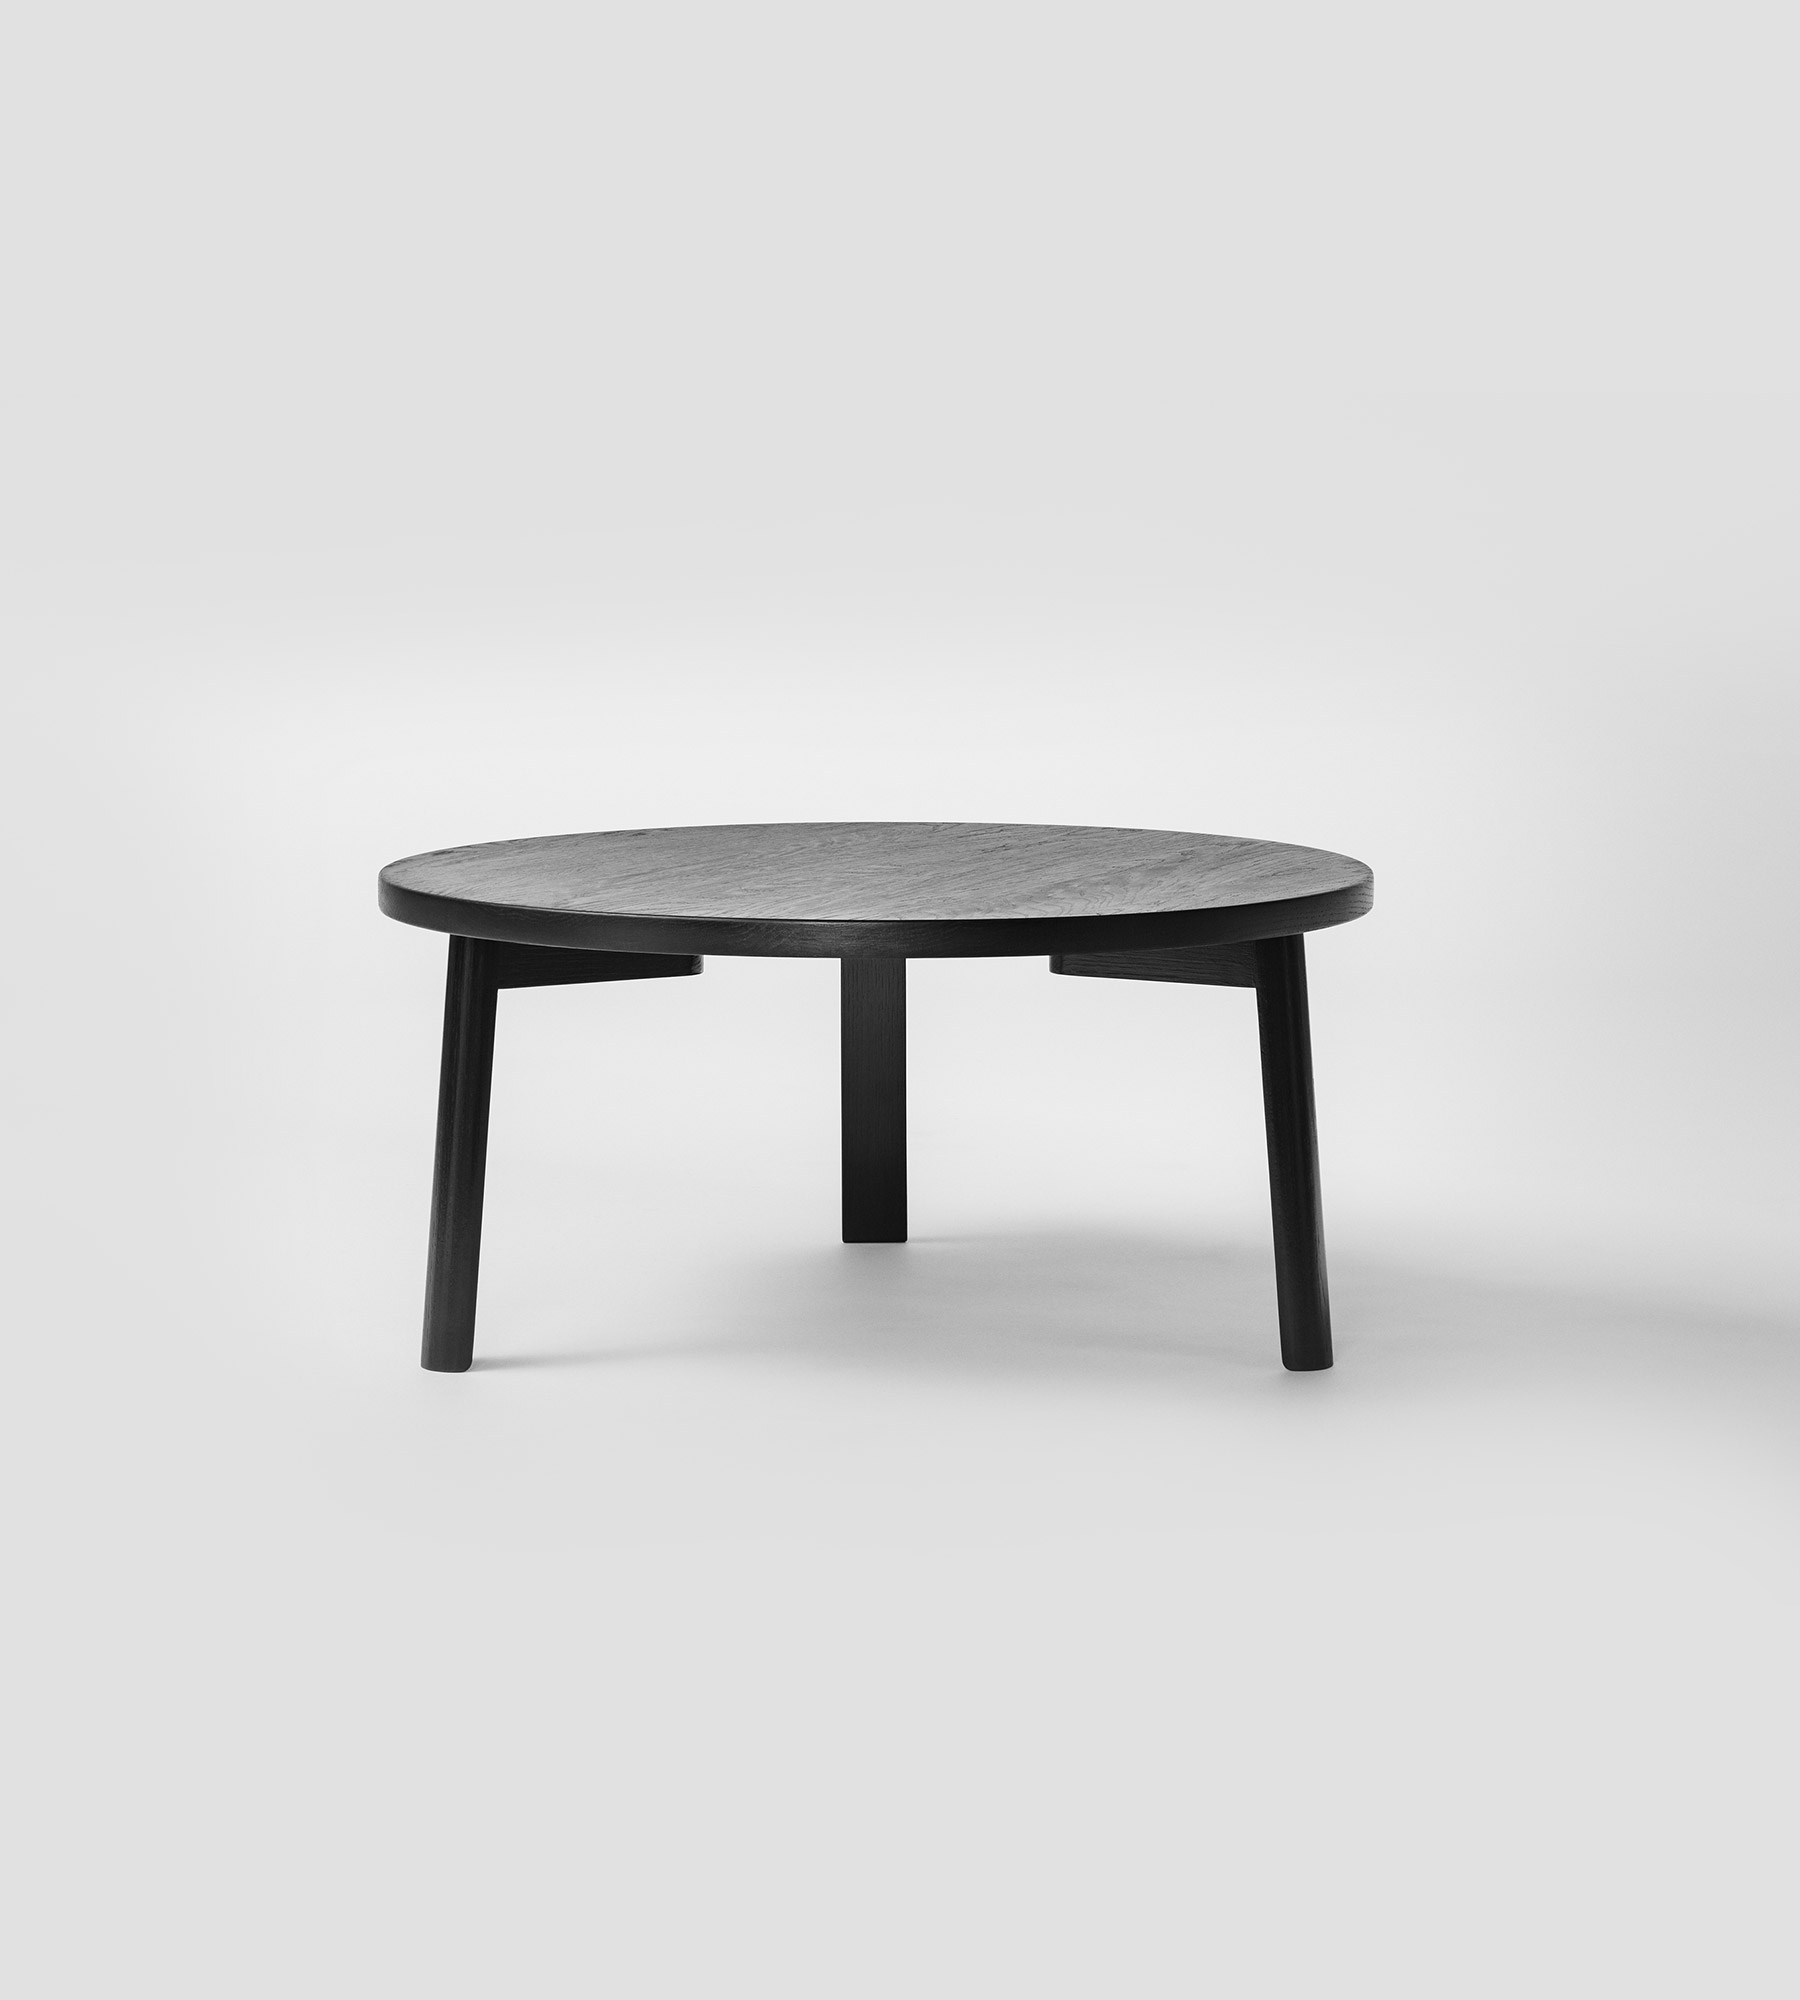 Ease Lounge Table by Terkel Skou Steffensen for Million